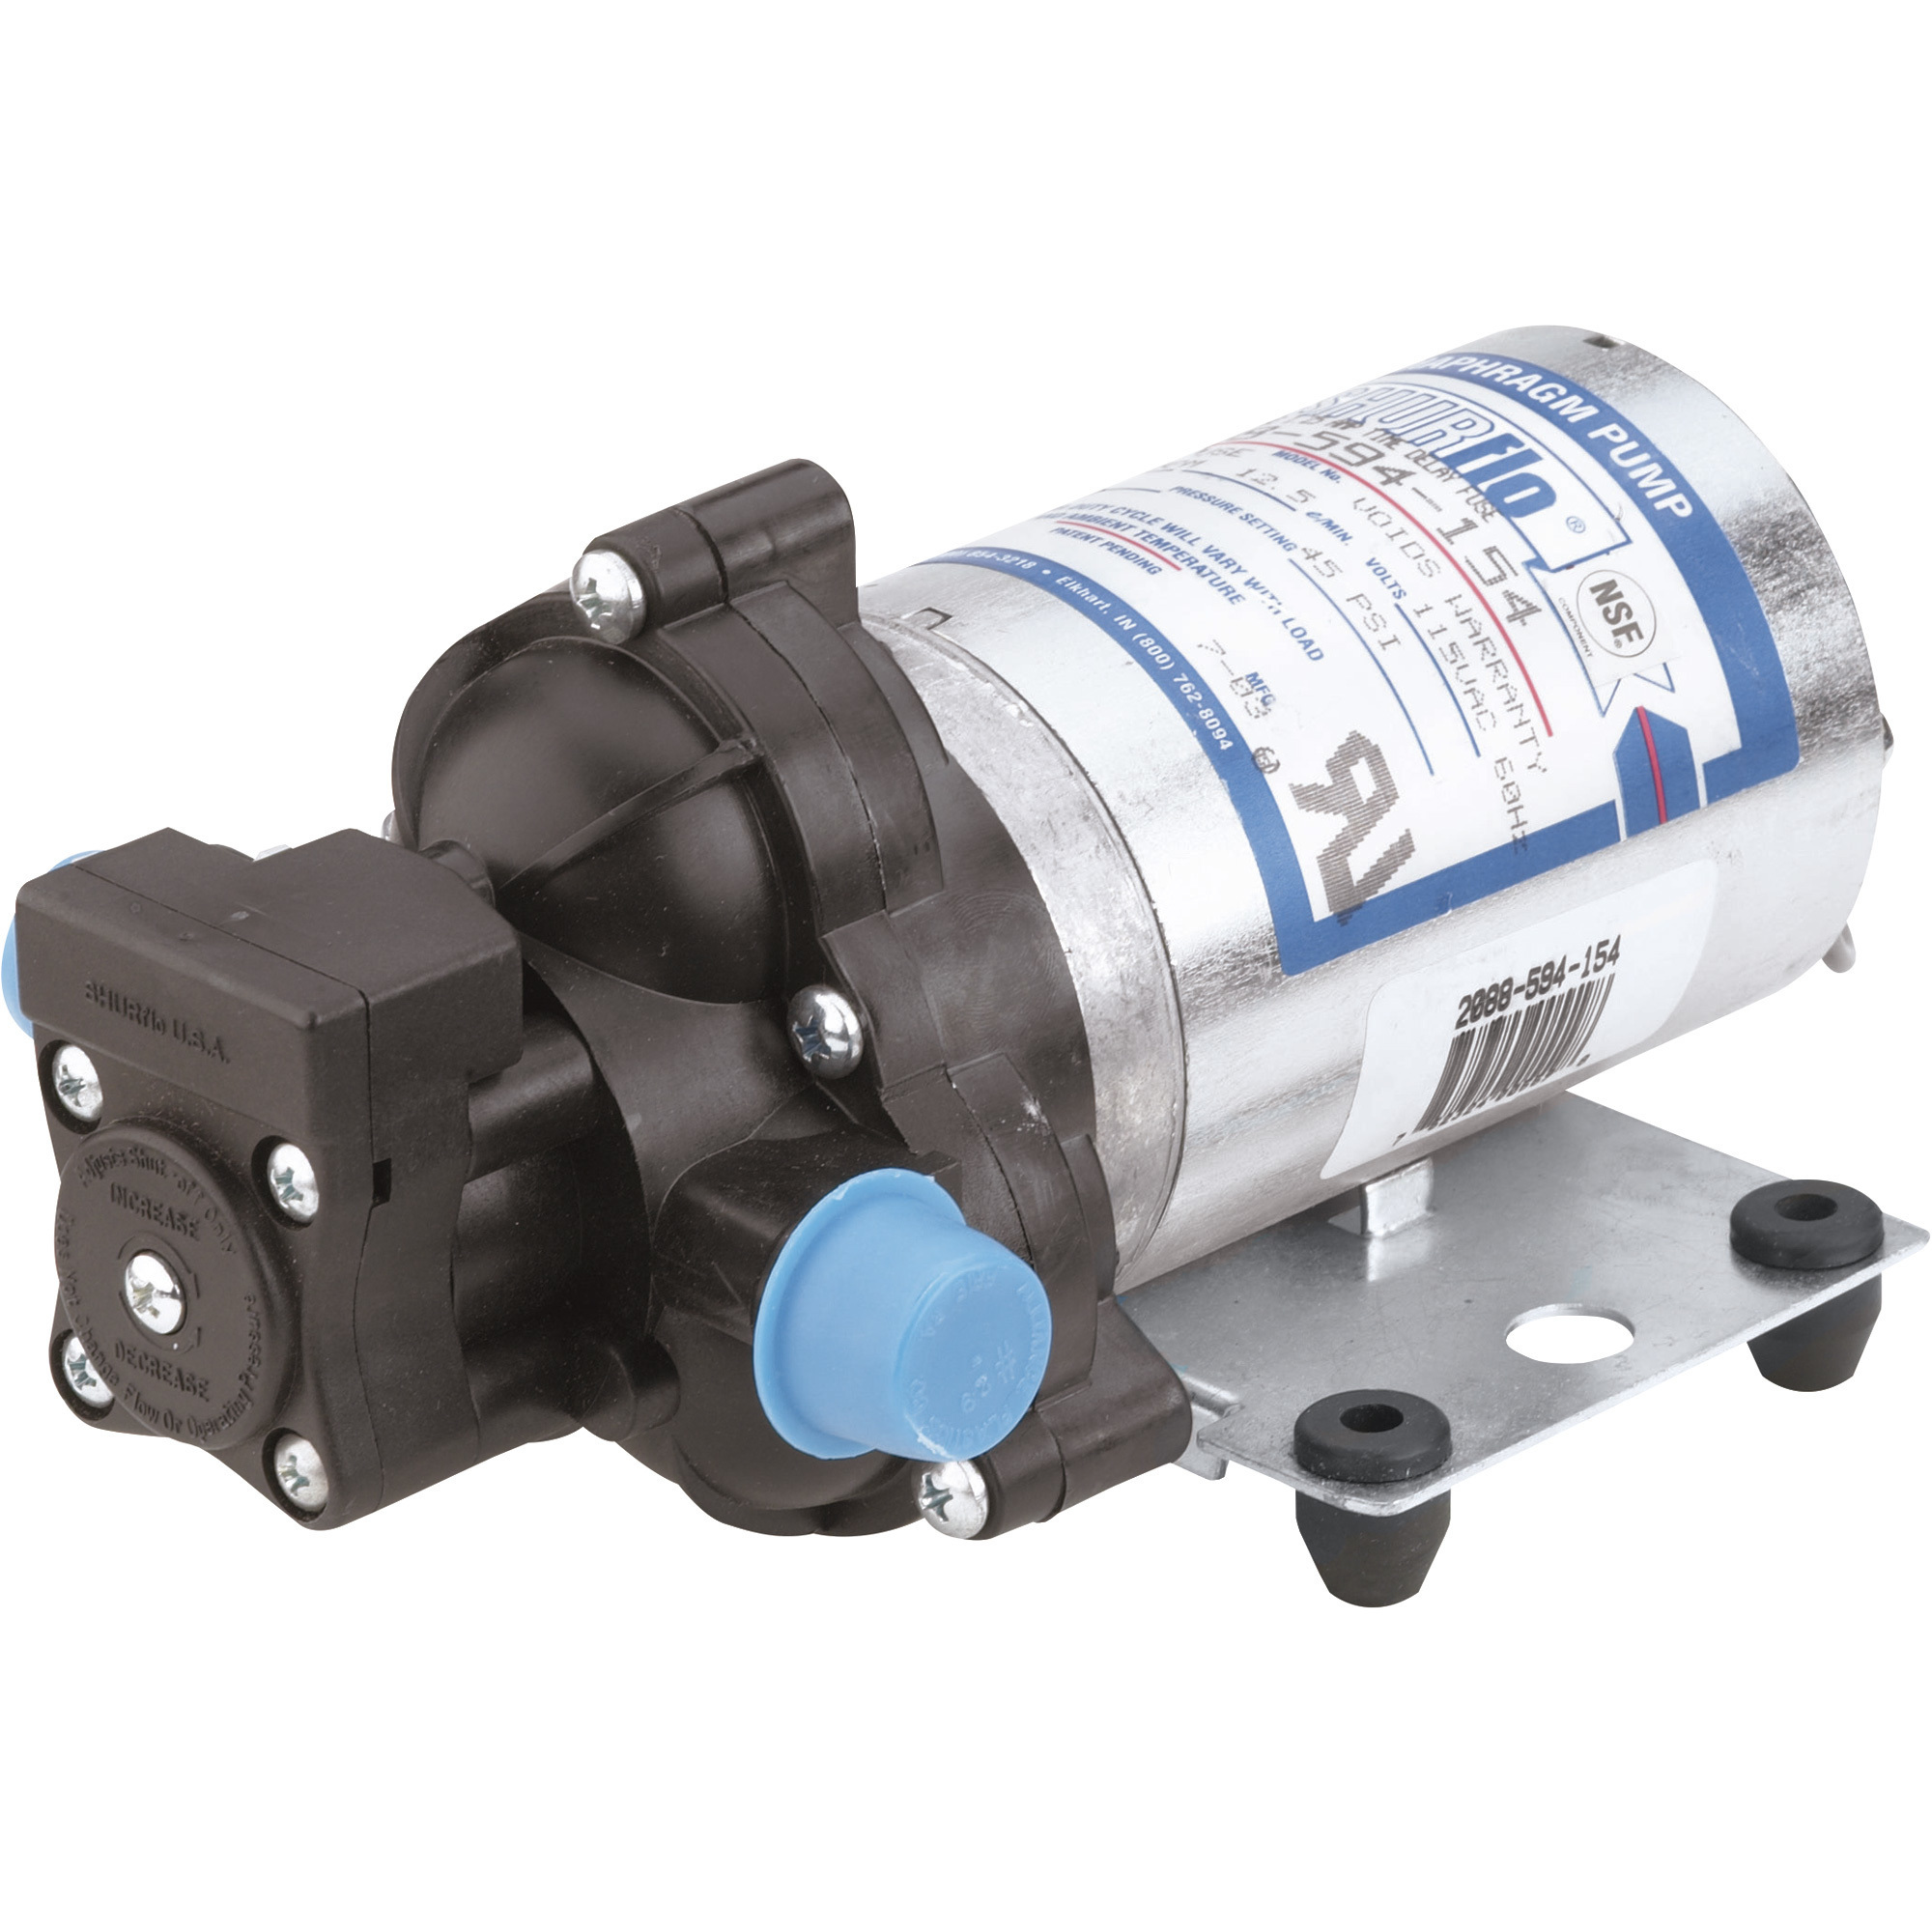 SHURflo Industrial Diaphragm Water Pump â 198 GPH, 1/2Inch Port, Model 2088-594-154BX